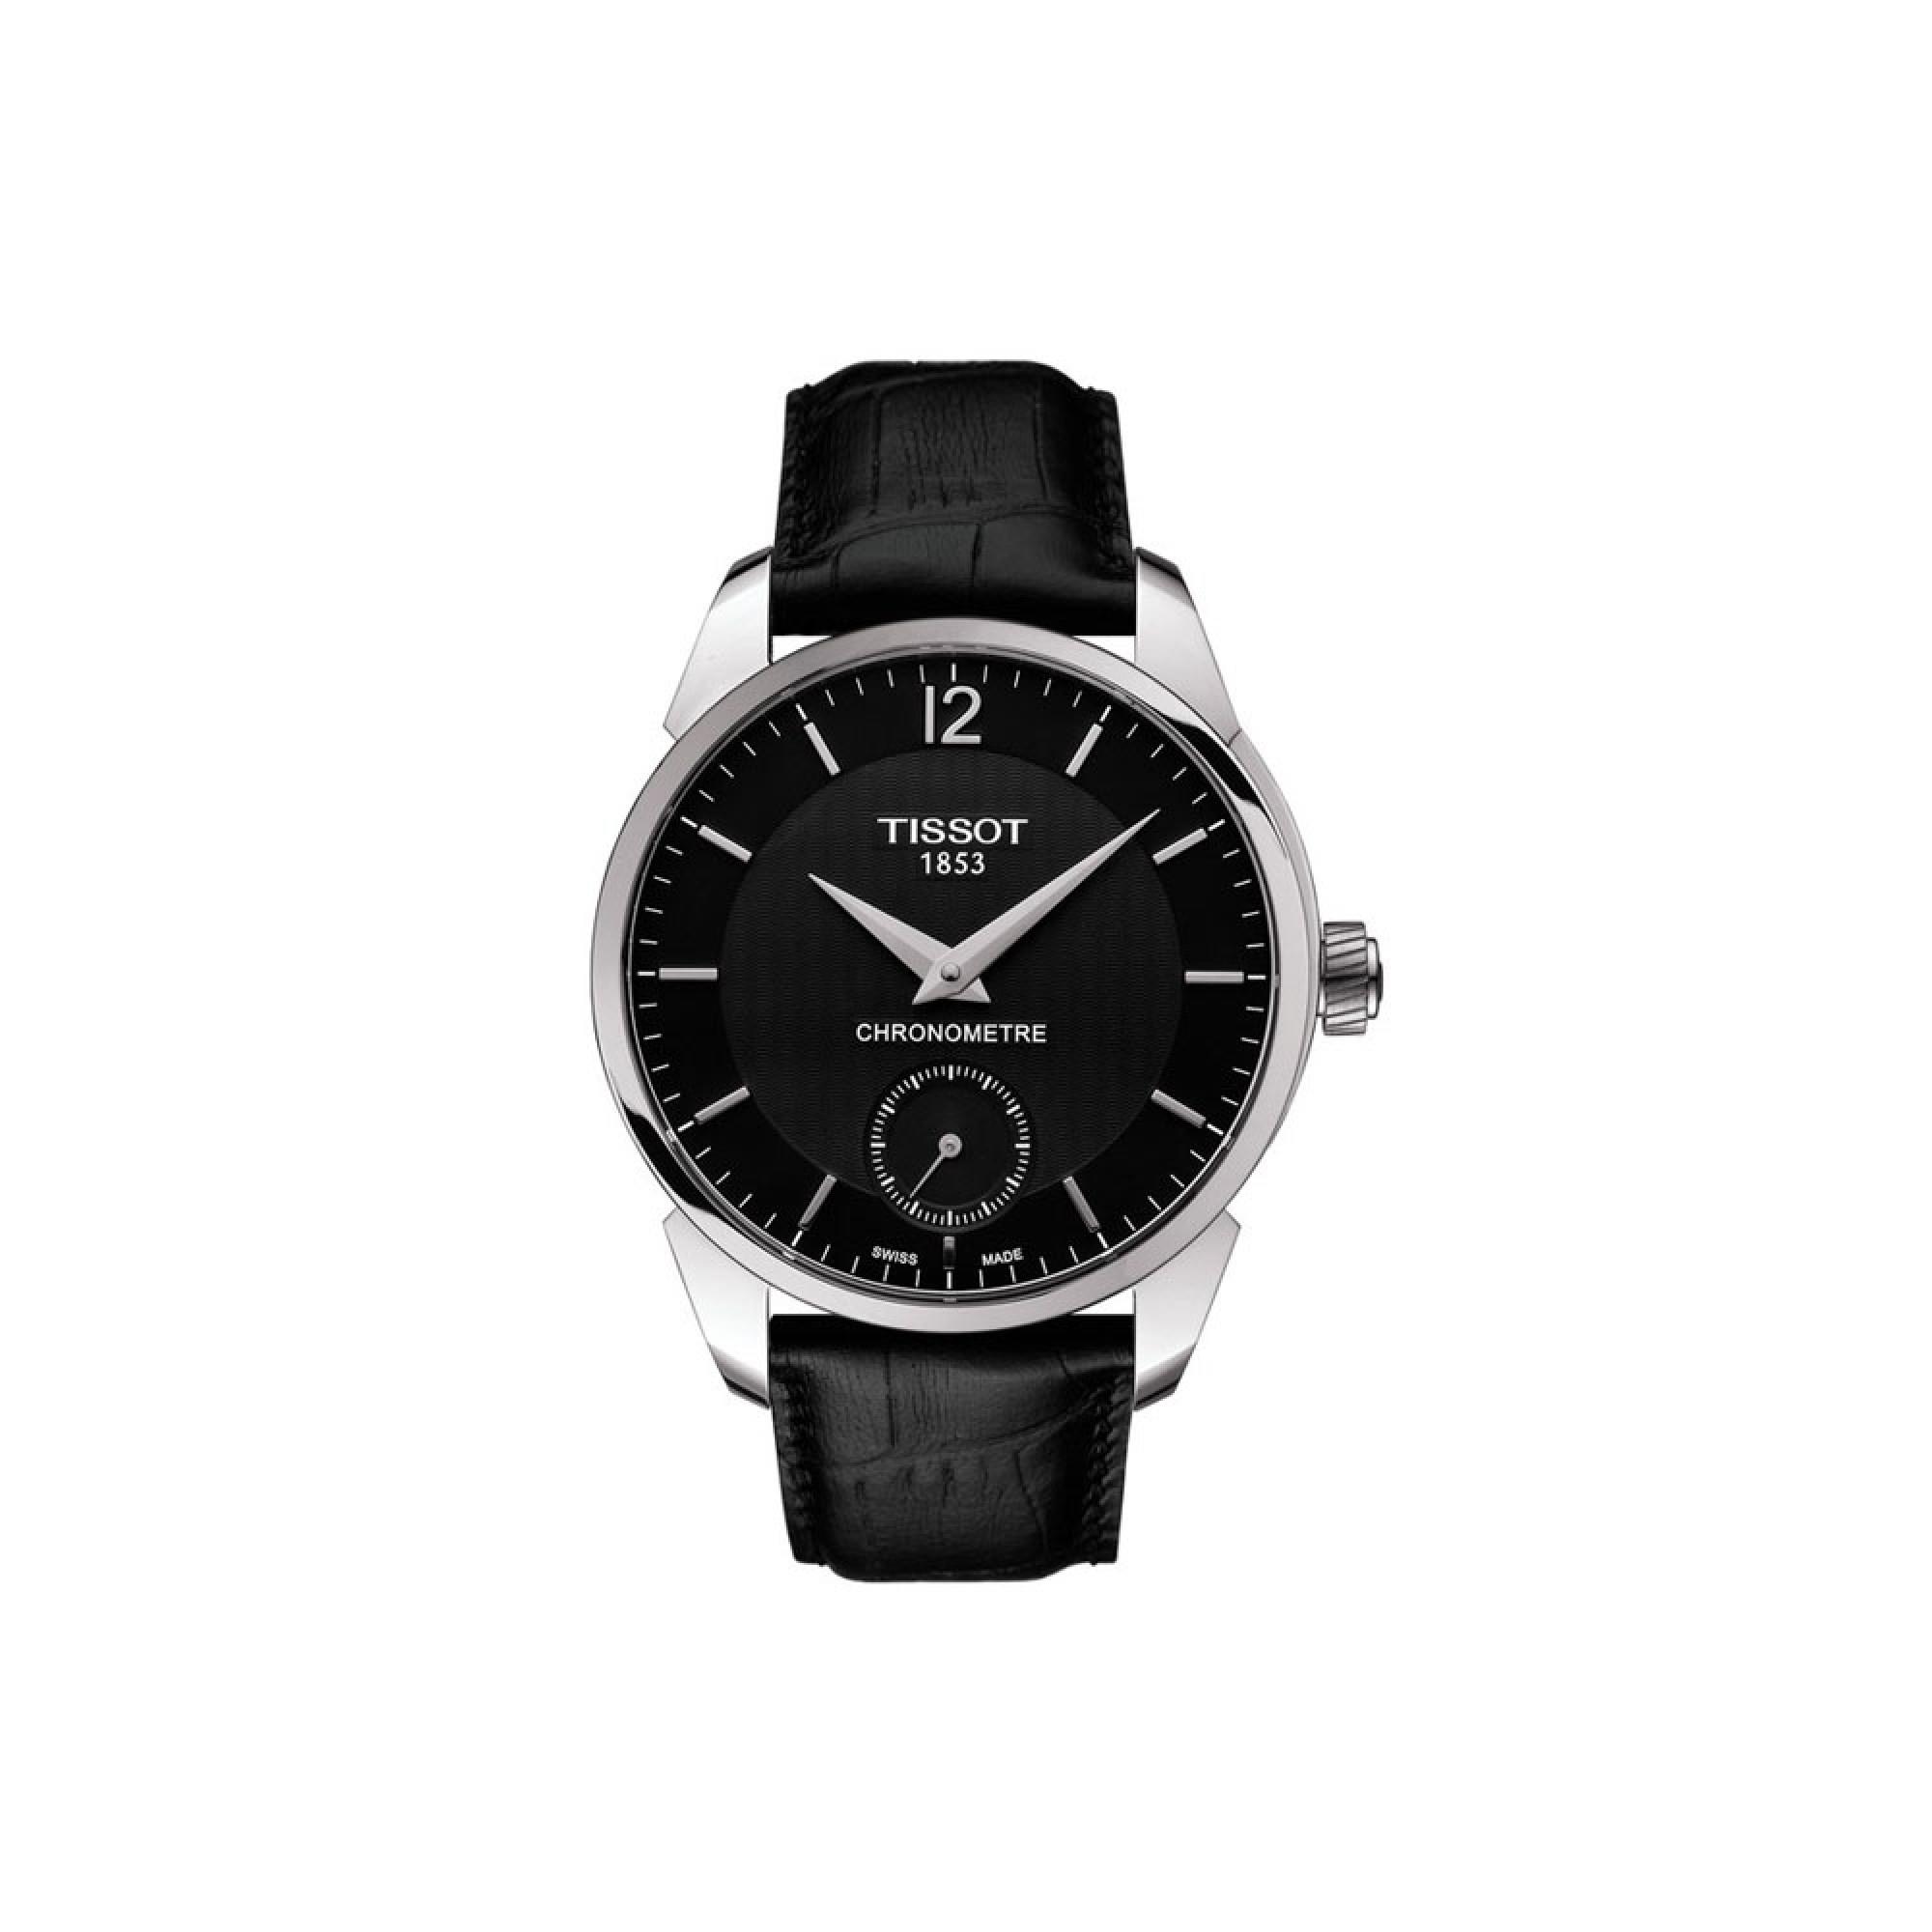 T-Complication Chronometre men's watch, 43 mm case - TISSOT